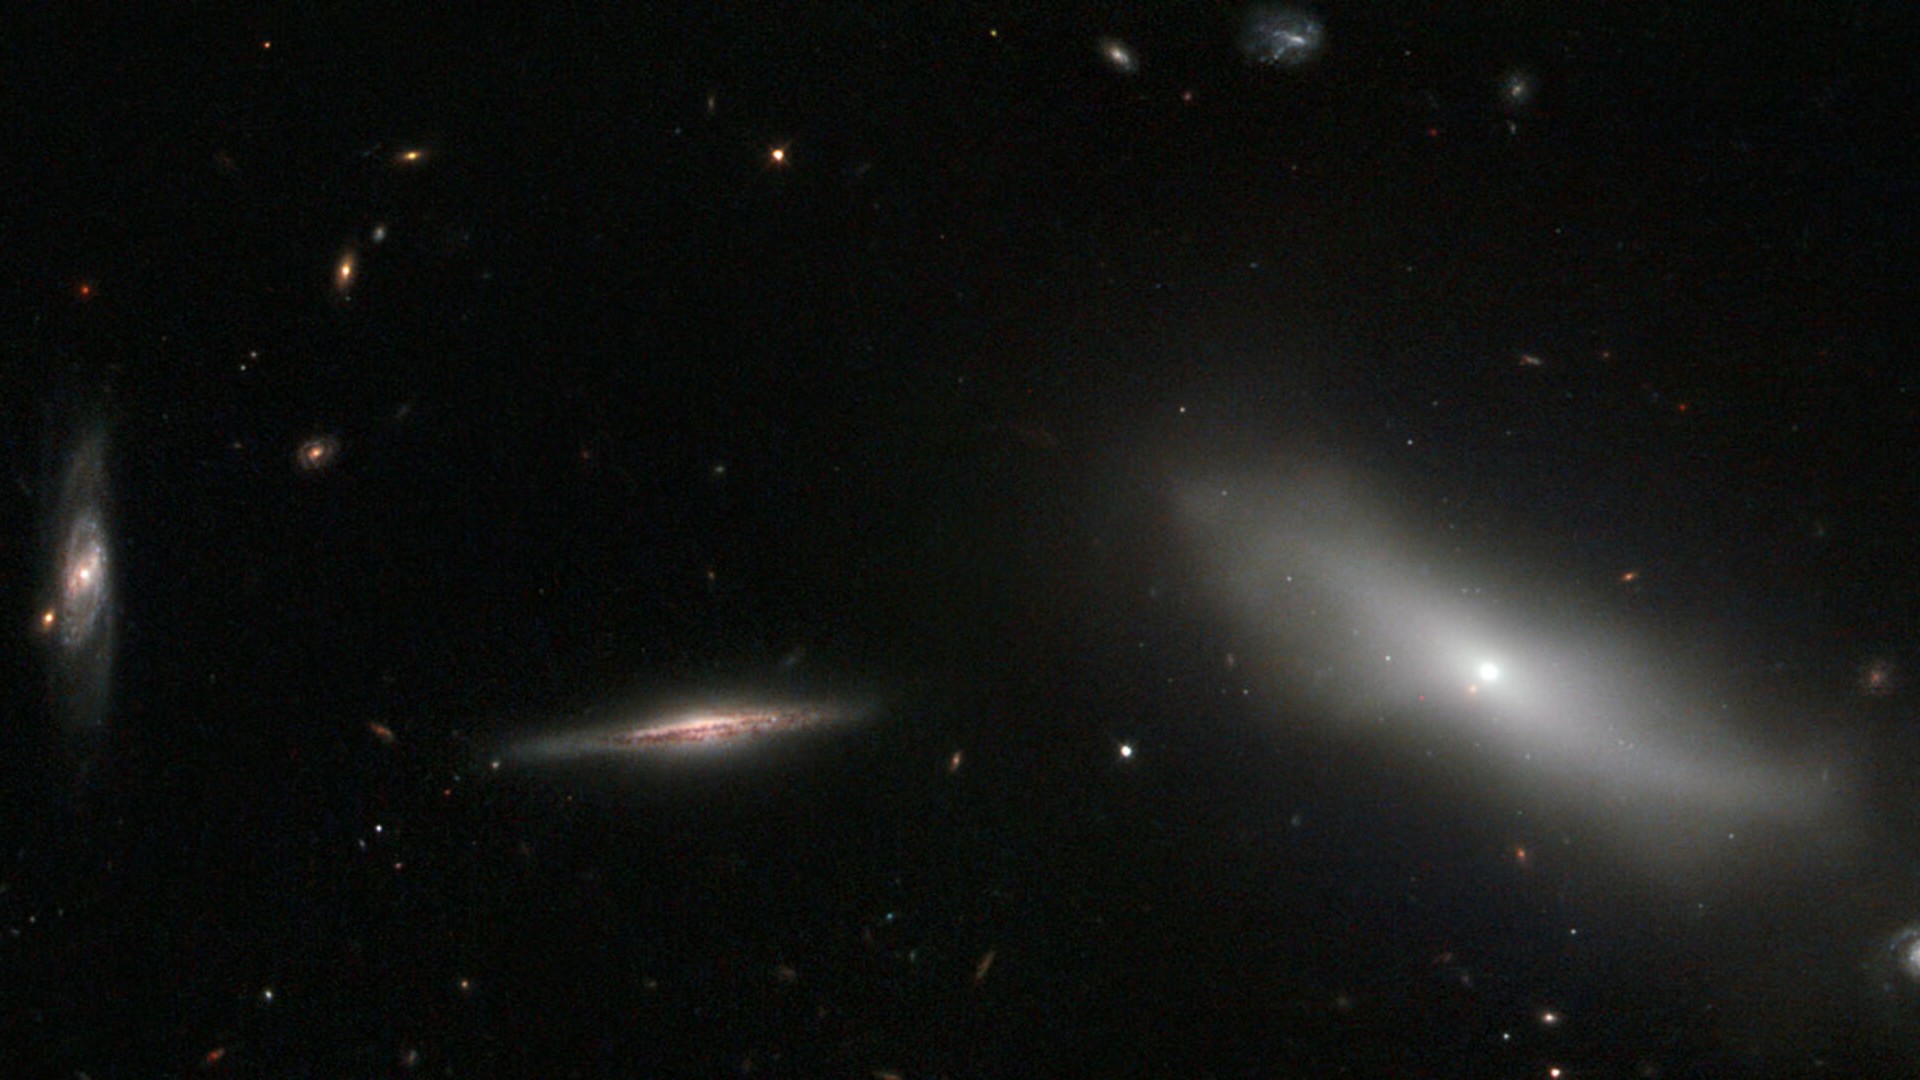 Esta imagem do Telescópio Espacial Hubble mostra um grupo de galáxias, localizado na Constelação de Eridanus. NGC 1190, à direita do quadro, pertence a um conjunto de galáxias conhecido como Hickson Compact Group 22 (HCG 22). Os Grupos Compactos de Hickson contém galáxias incrivelmente unidas. Seu descobridor, Paul Hickson, descreveu 100 desses objetos em seu catálogo HCG, na década de 1980. Acredita-se que esses grupos de vida curta e tendências autodestrutivas terminem se fundindo em galáxias elípticas gigantes. Entretanto, apesar da informação sobre a sua forma e destino, o papel deles na formação e evolução galáctica ainda não está claro